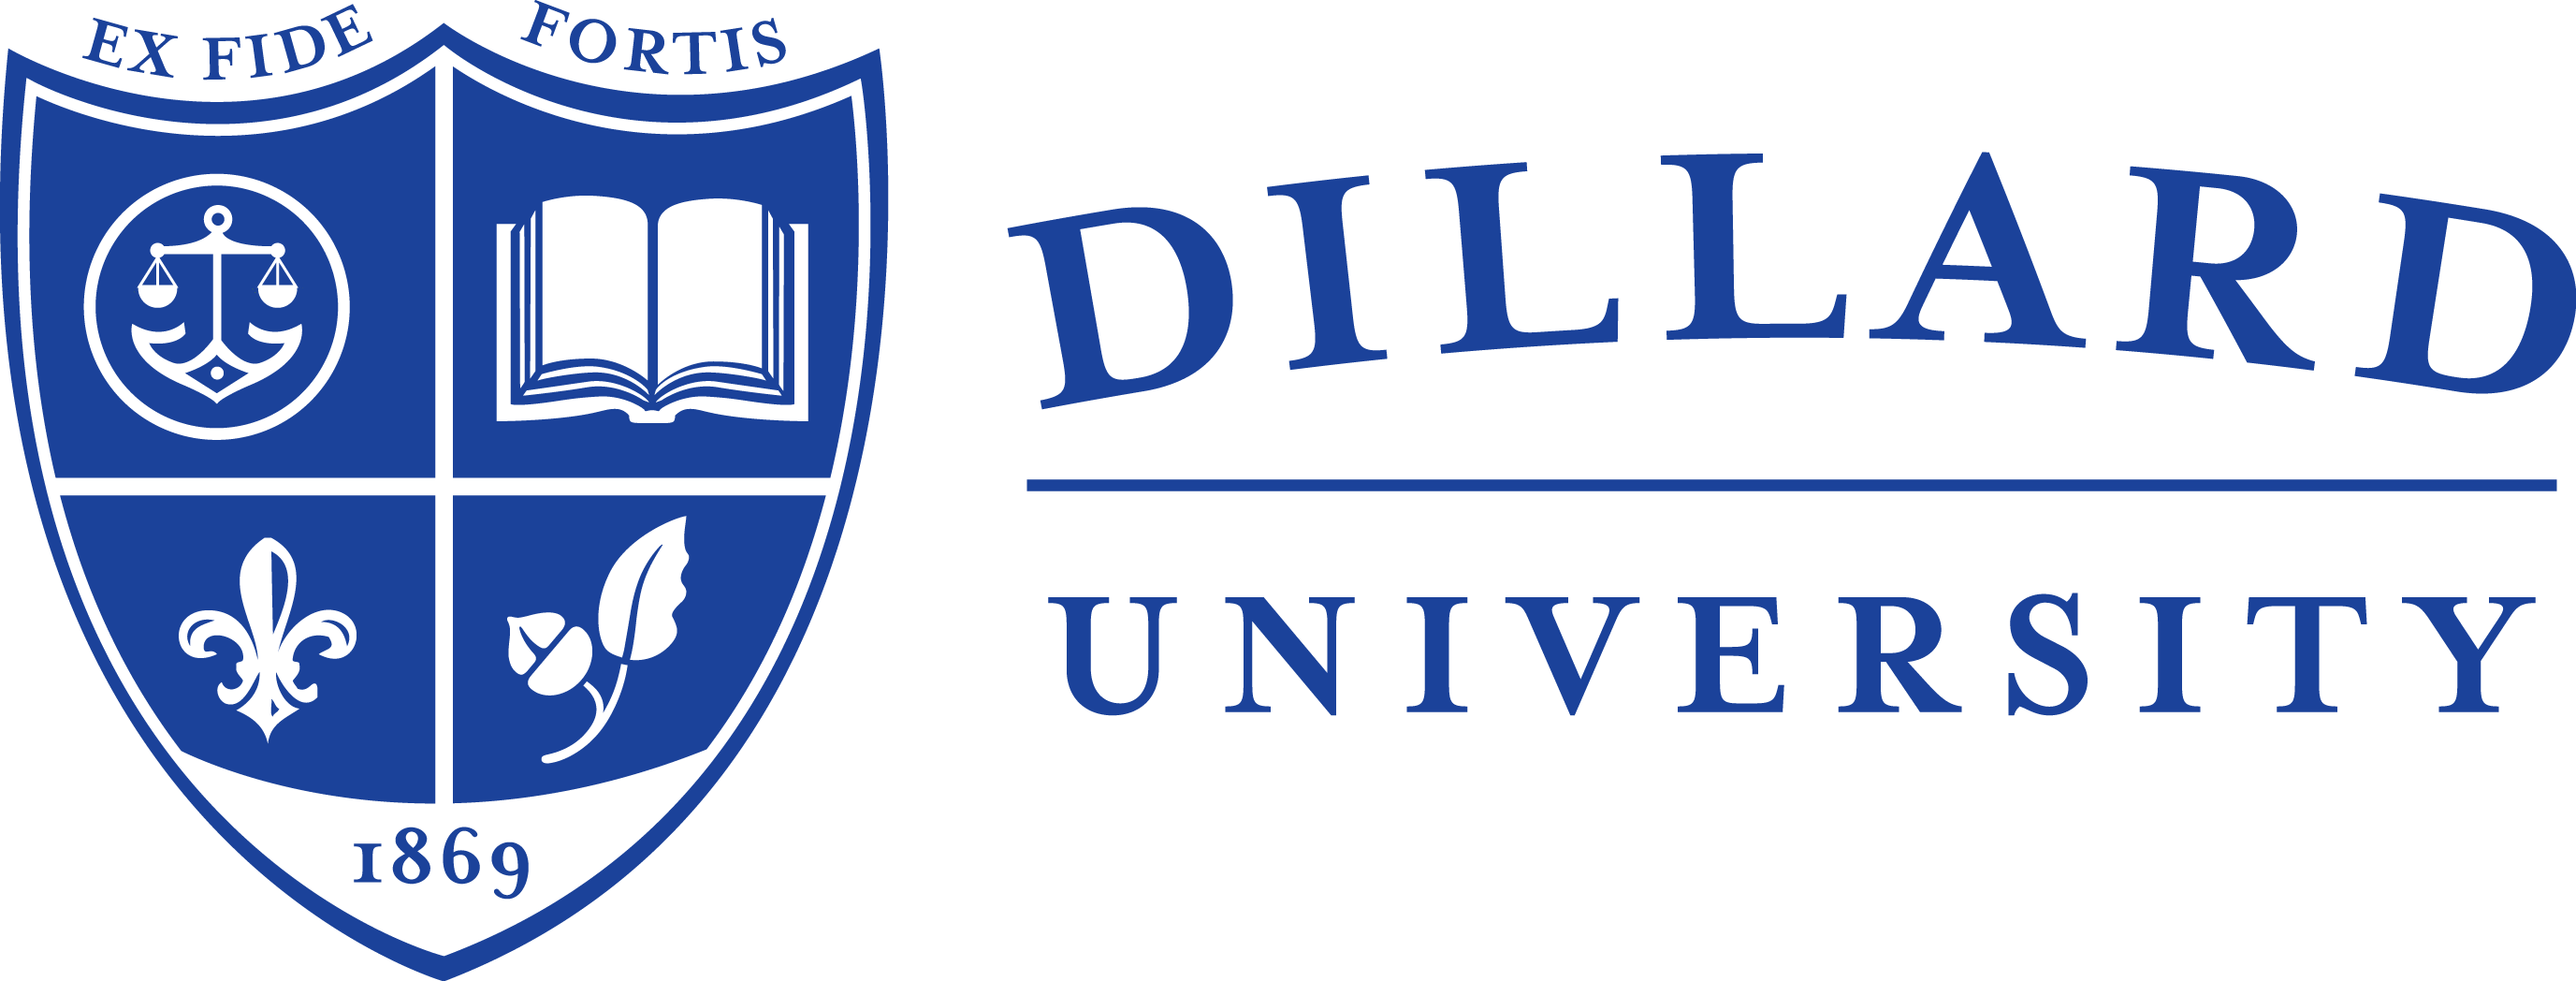 dillard-logo